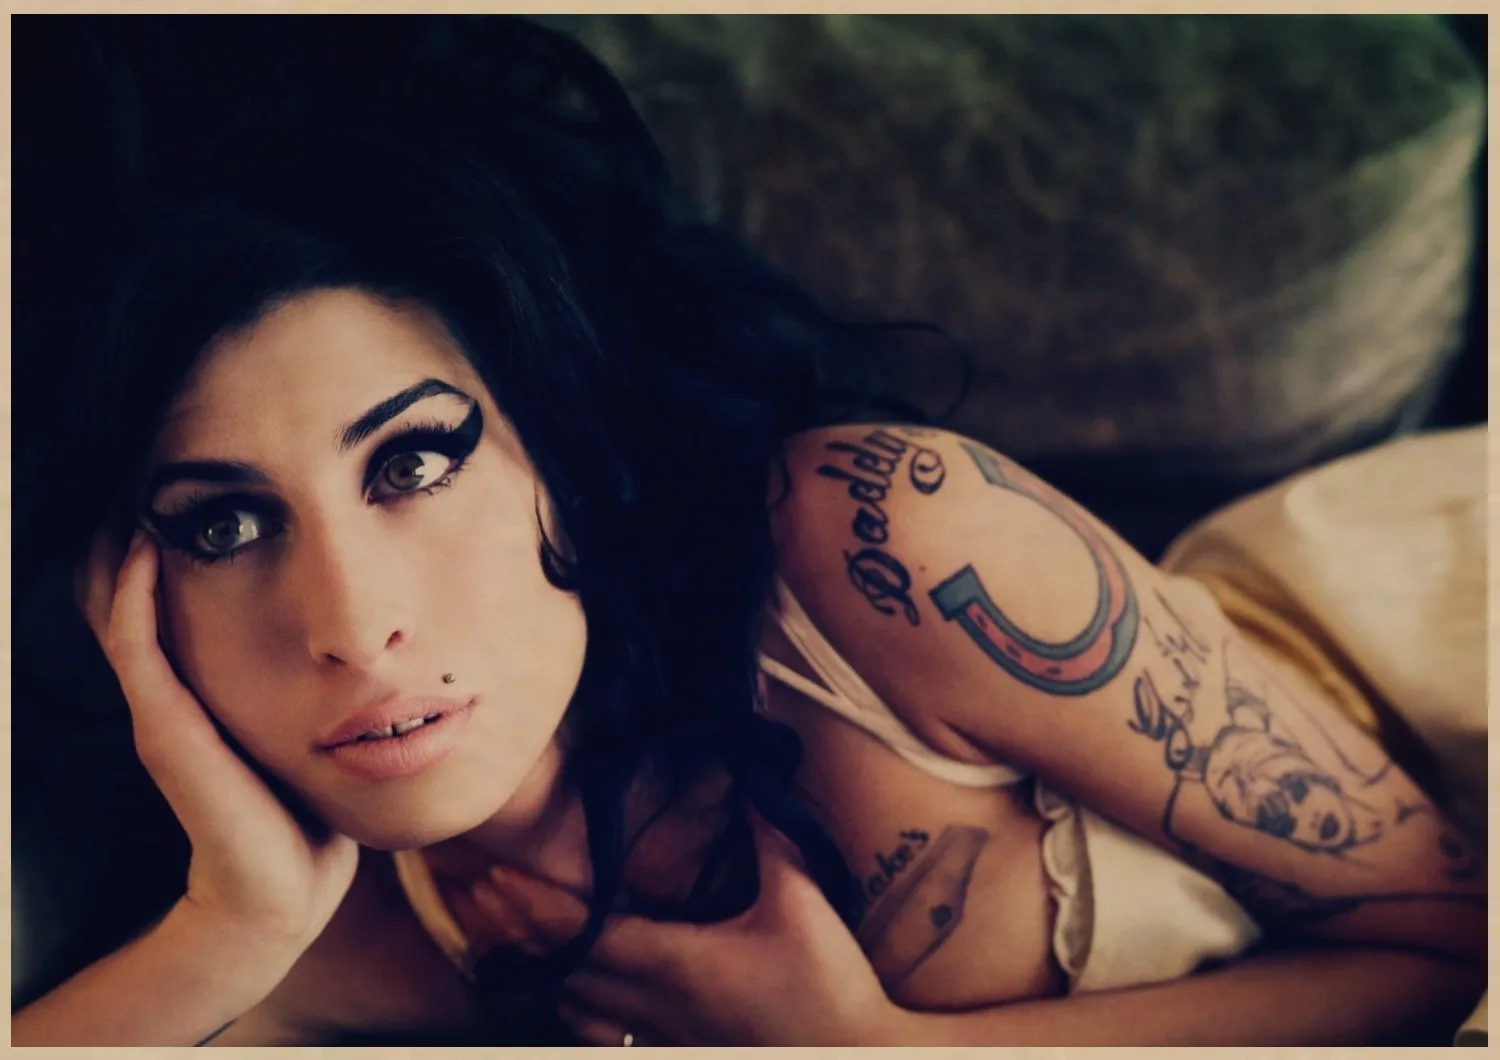 Музыкальный певец Amy Winehouse плакат печать на крафтовой бумаге постер в стиле ретро домашний Декор настенный художественный плакат комната декорация декор для стен